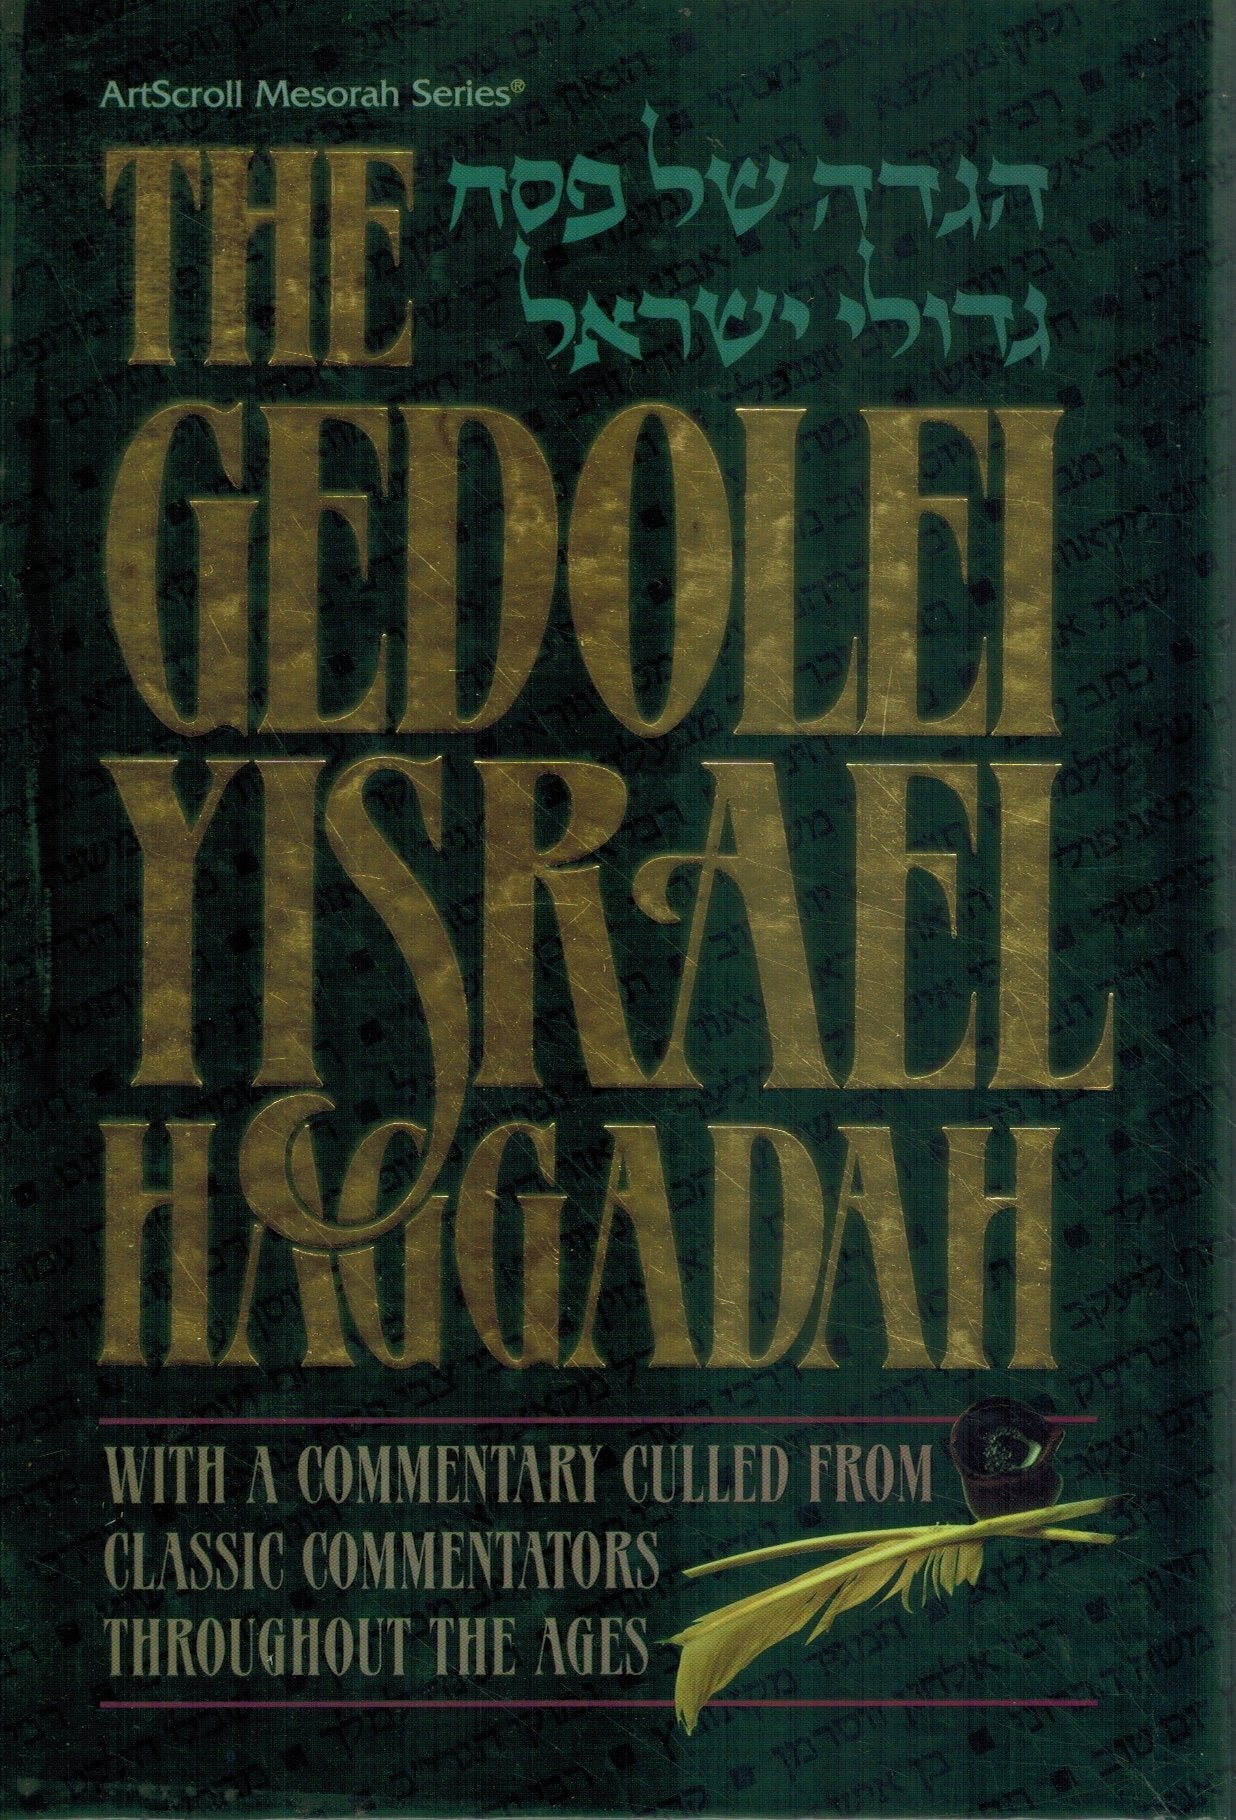 GEDOLI YISRAEL HAGGADAH  by Stein, Rabbi Yisrael